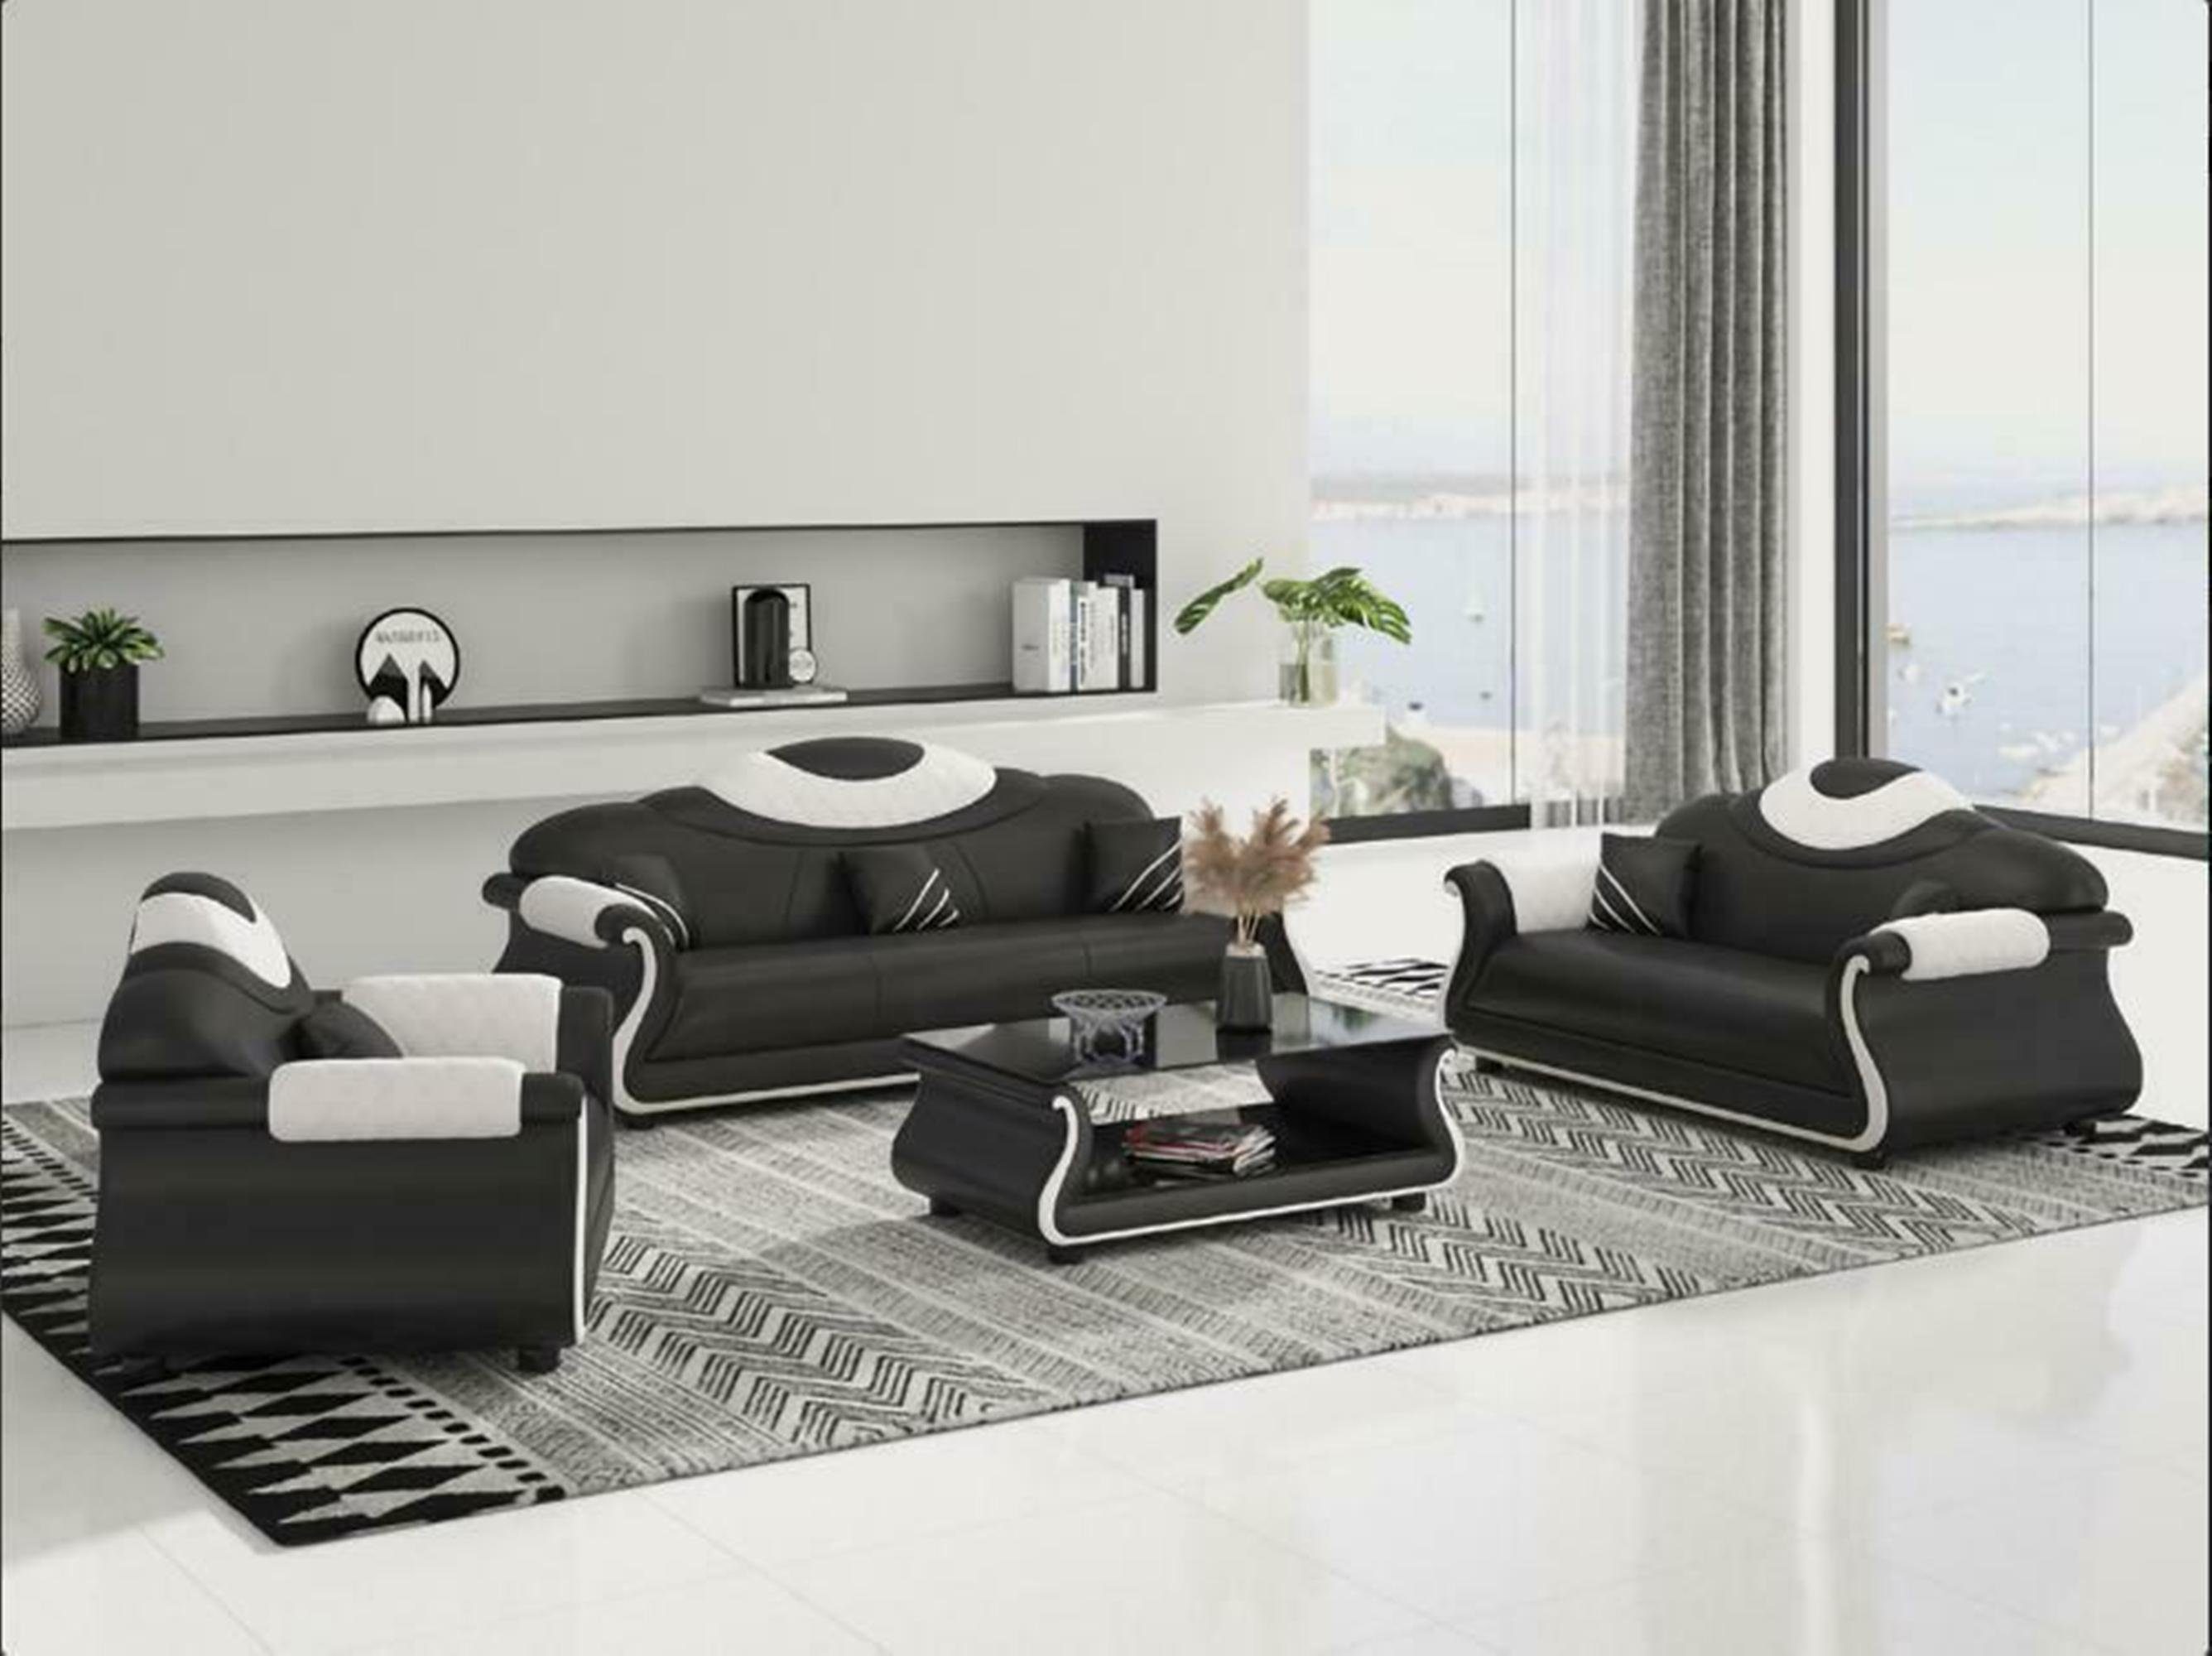 JVmoebel Wohnzimmer-Set Luxus Möbel Couch Sofa Polster 3+2+1 Sitzer + Couchtisch Holz neu Schwarz/Weiß